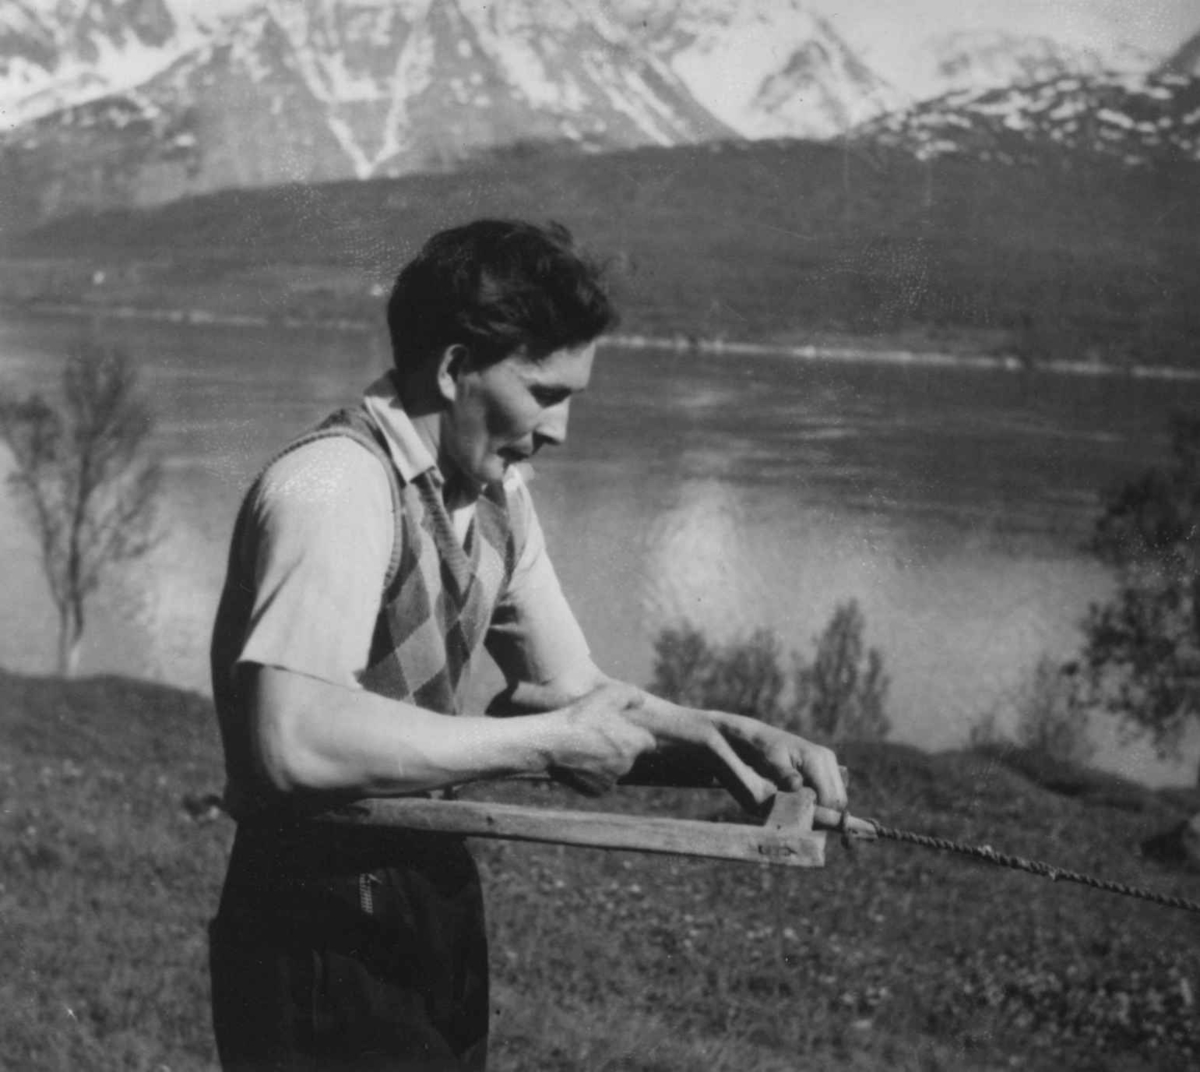 Tautvinning (6). Mann med tauvinde. Njosken 1952.